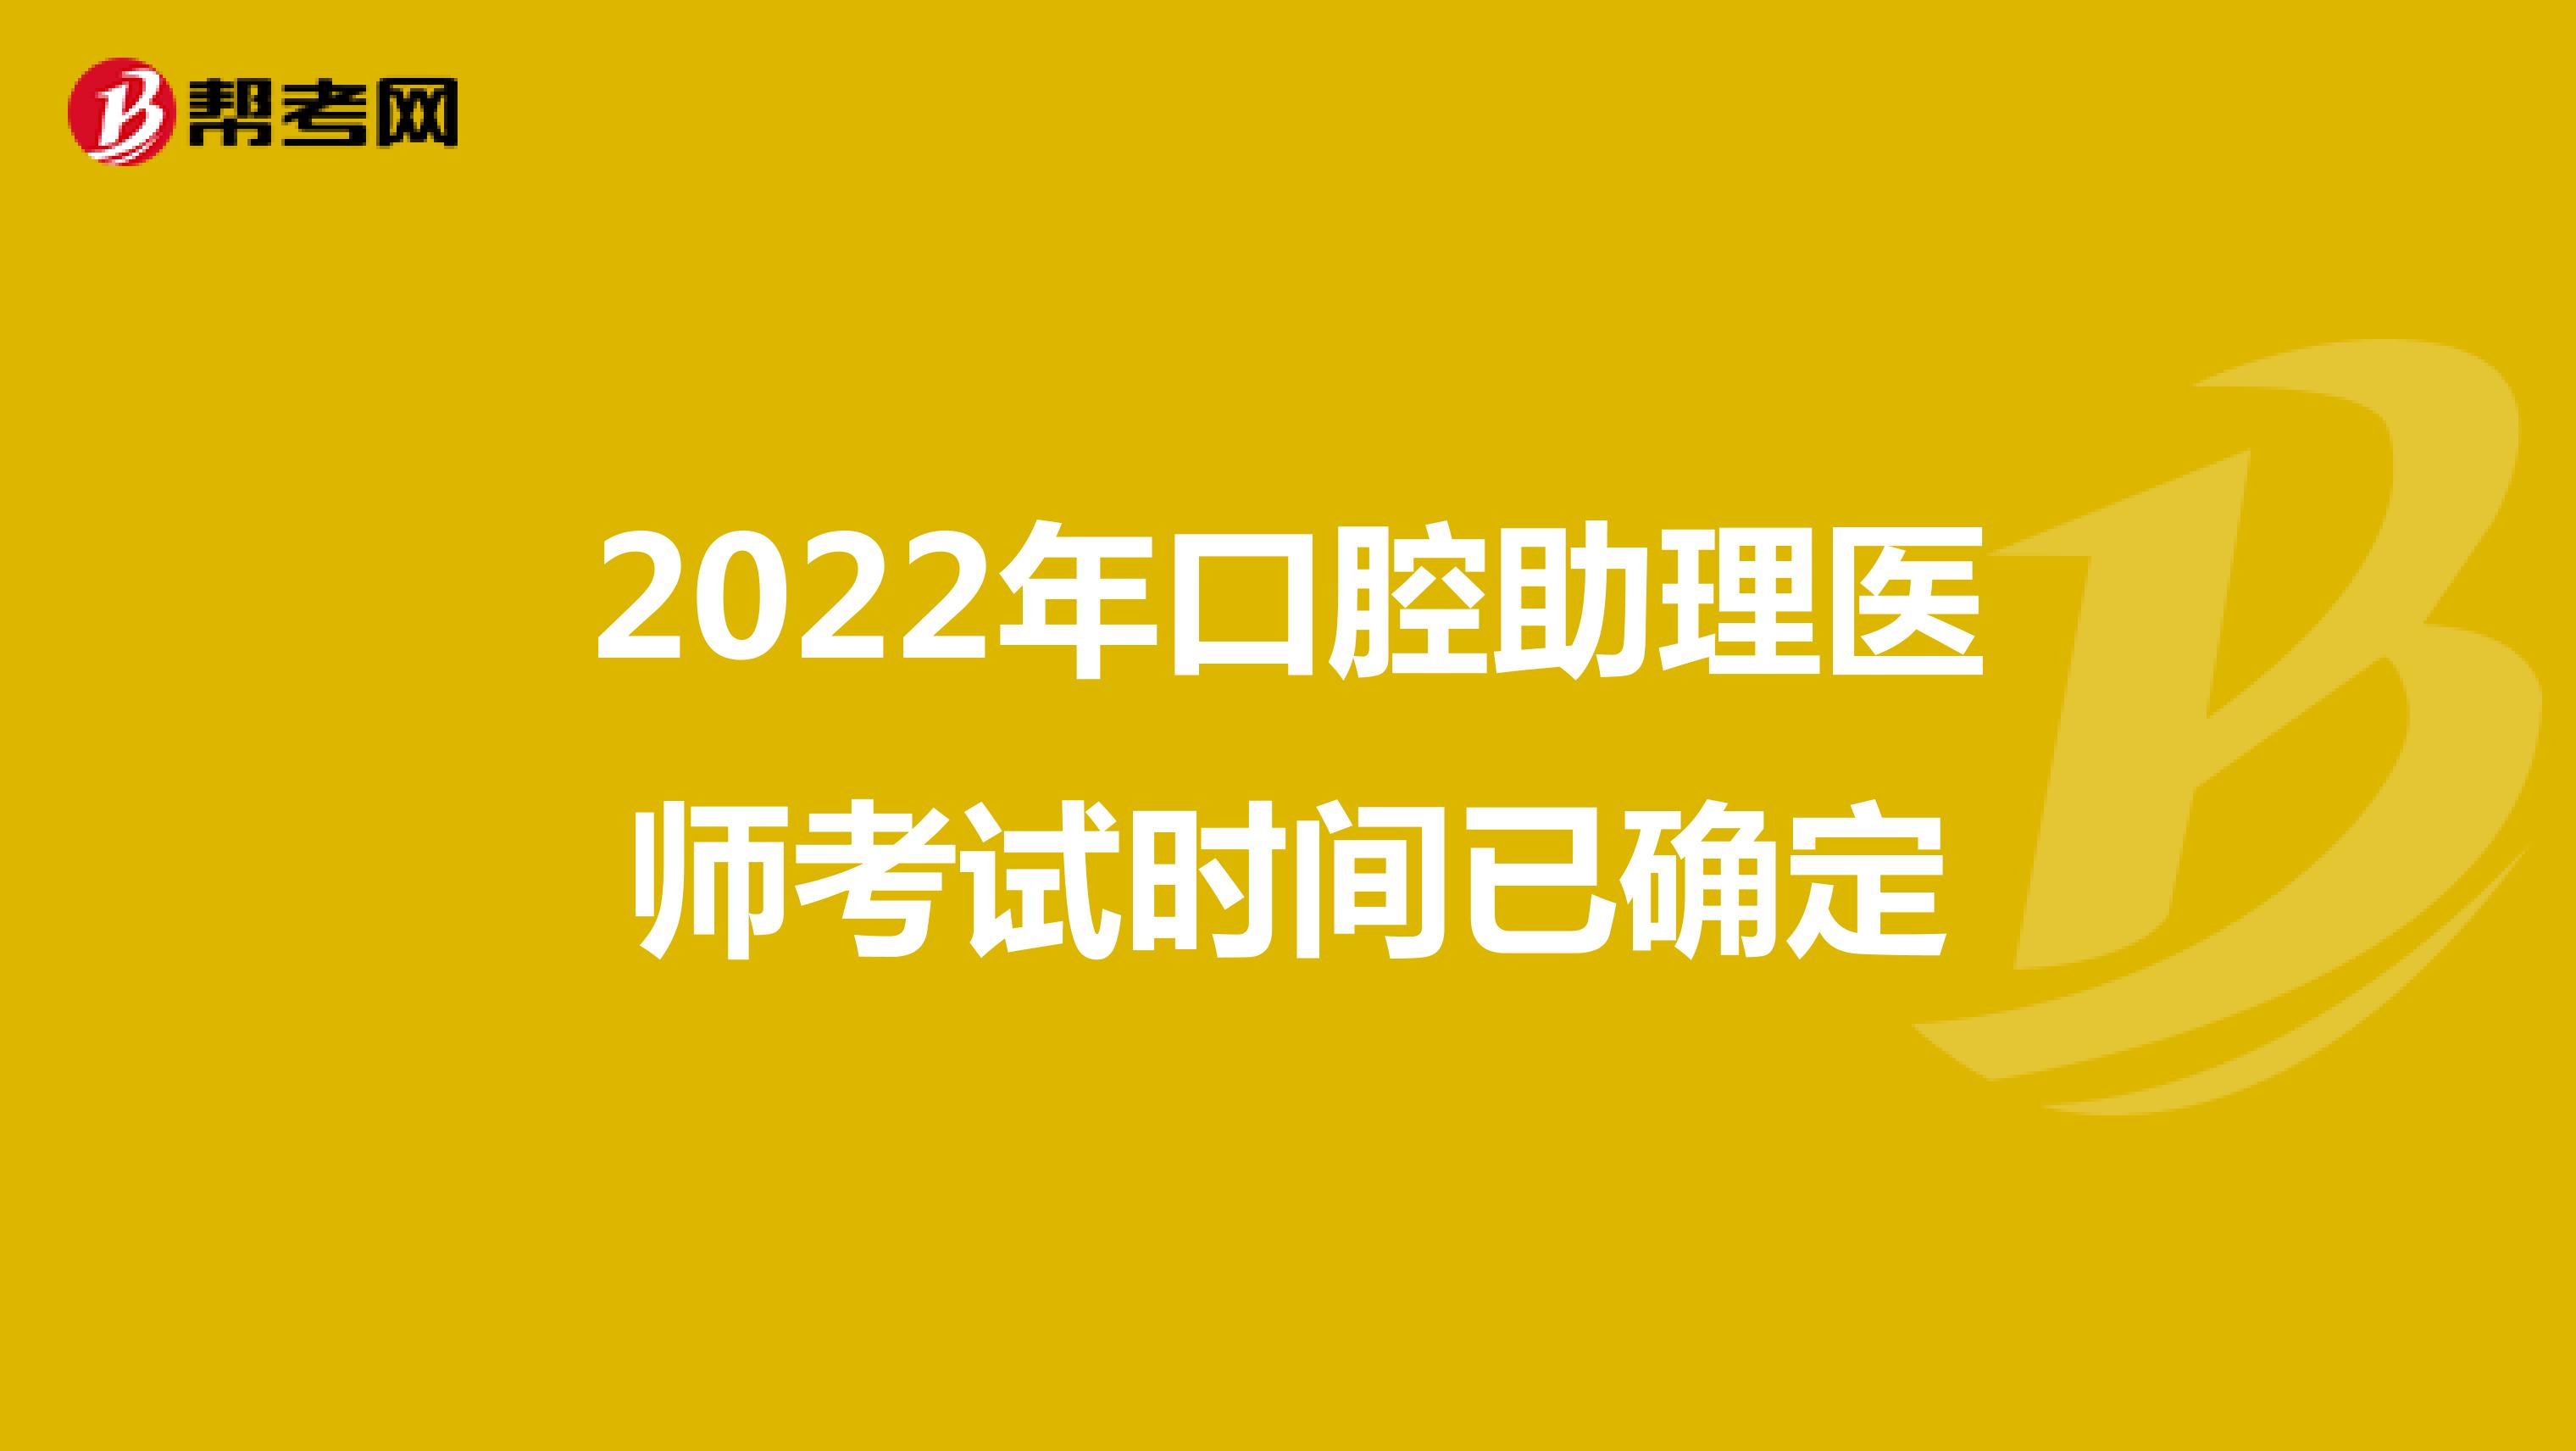 2022年口腔助理医师考试时间已确定